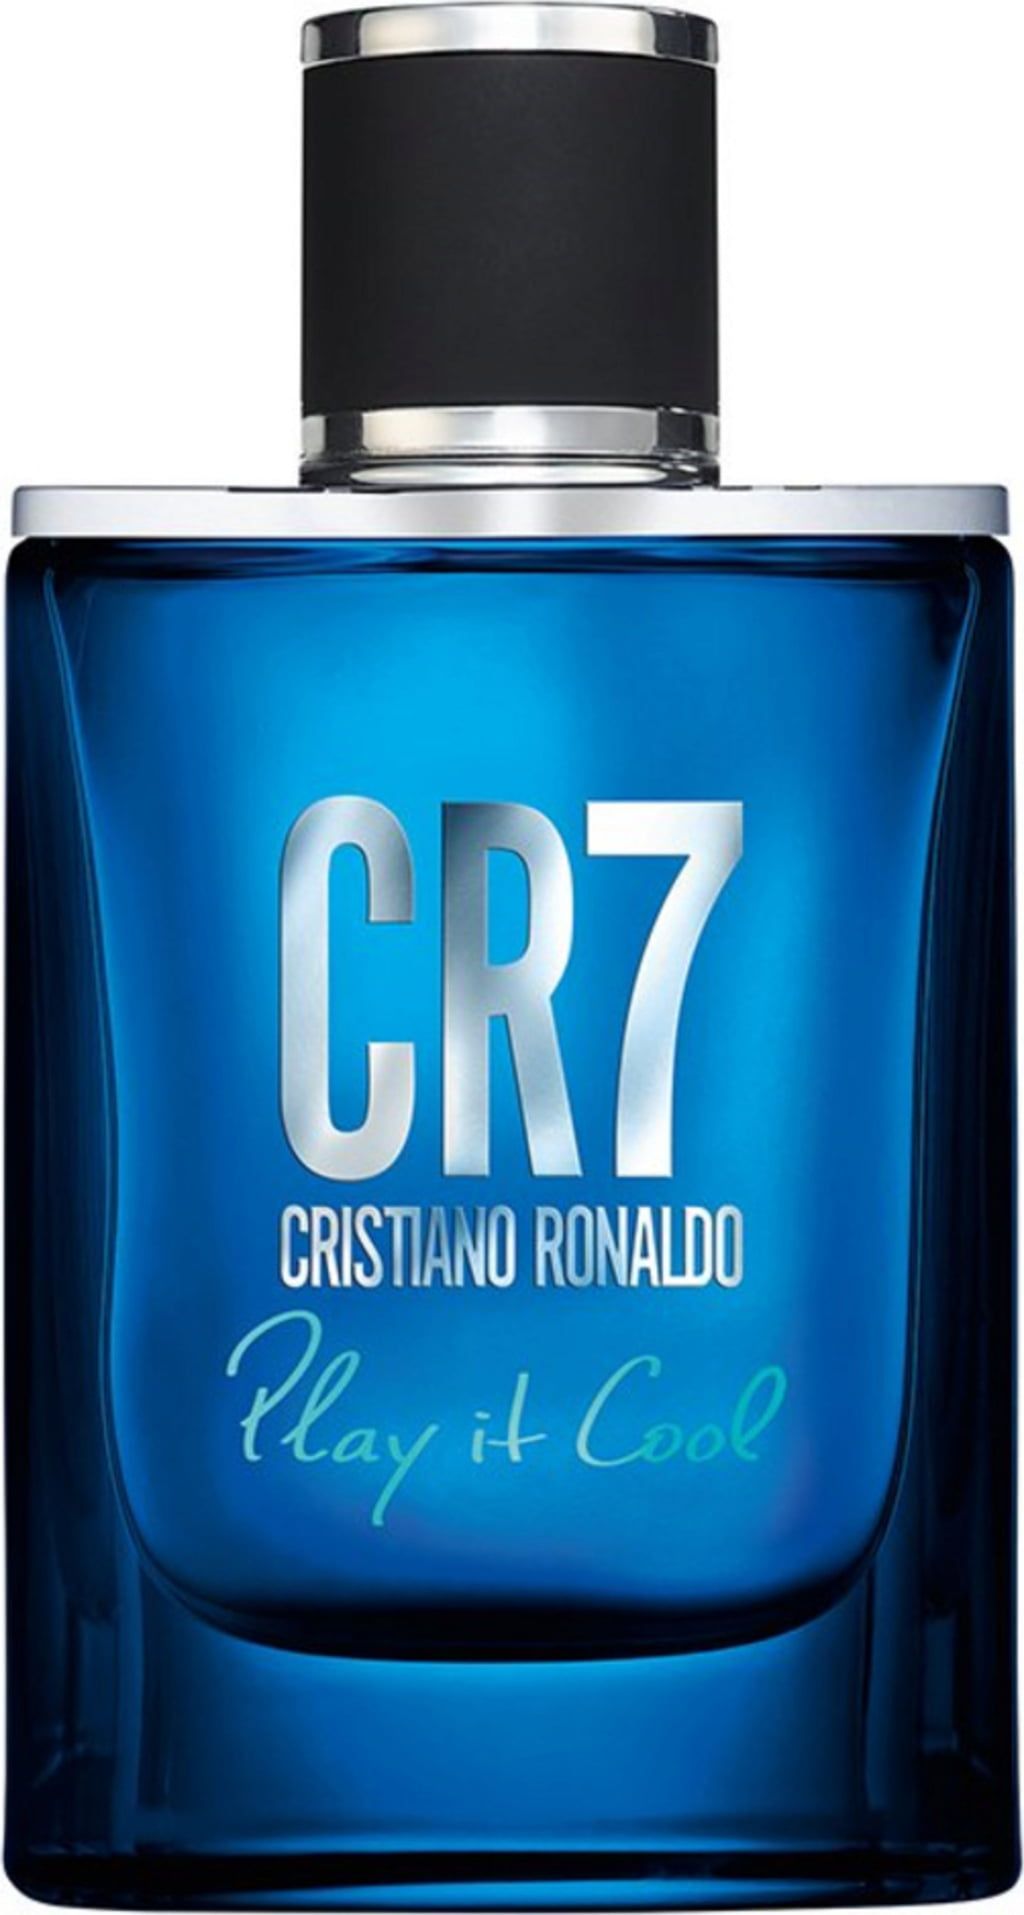 Cristiano Ronaldo - CR7 Play It Cool - Eau de Toilette Spray Masculino -  Fragrância Fresca e Aromática com Notas de Bergamota, Cardamomo e Âmbar -  50